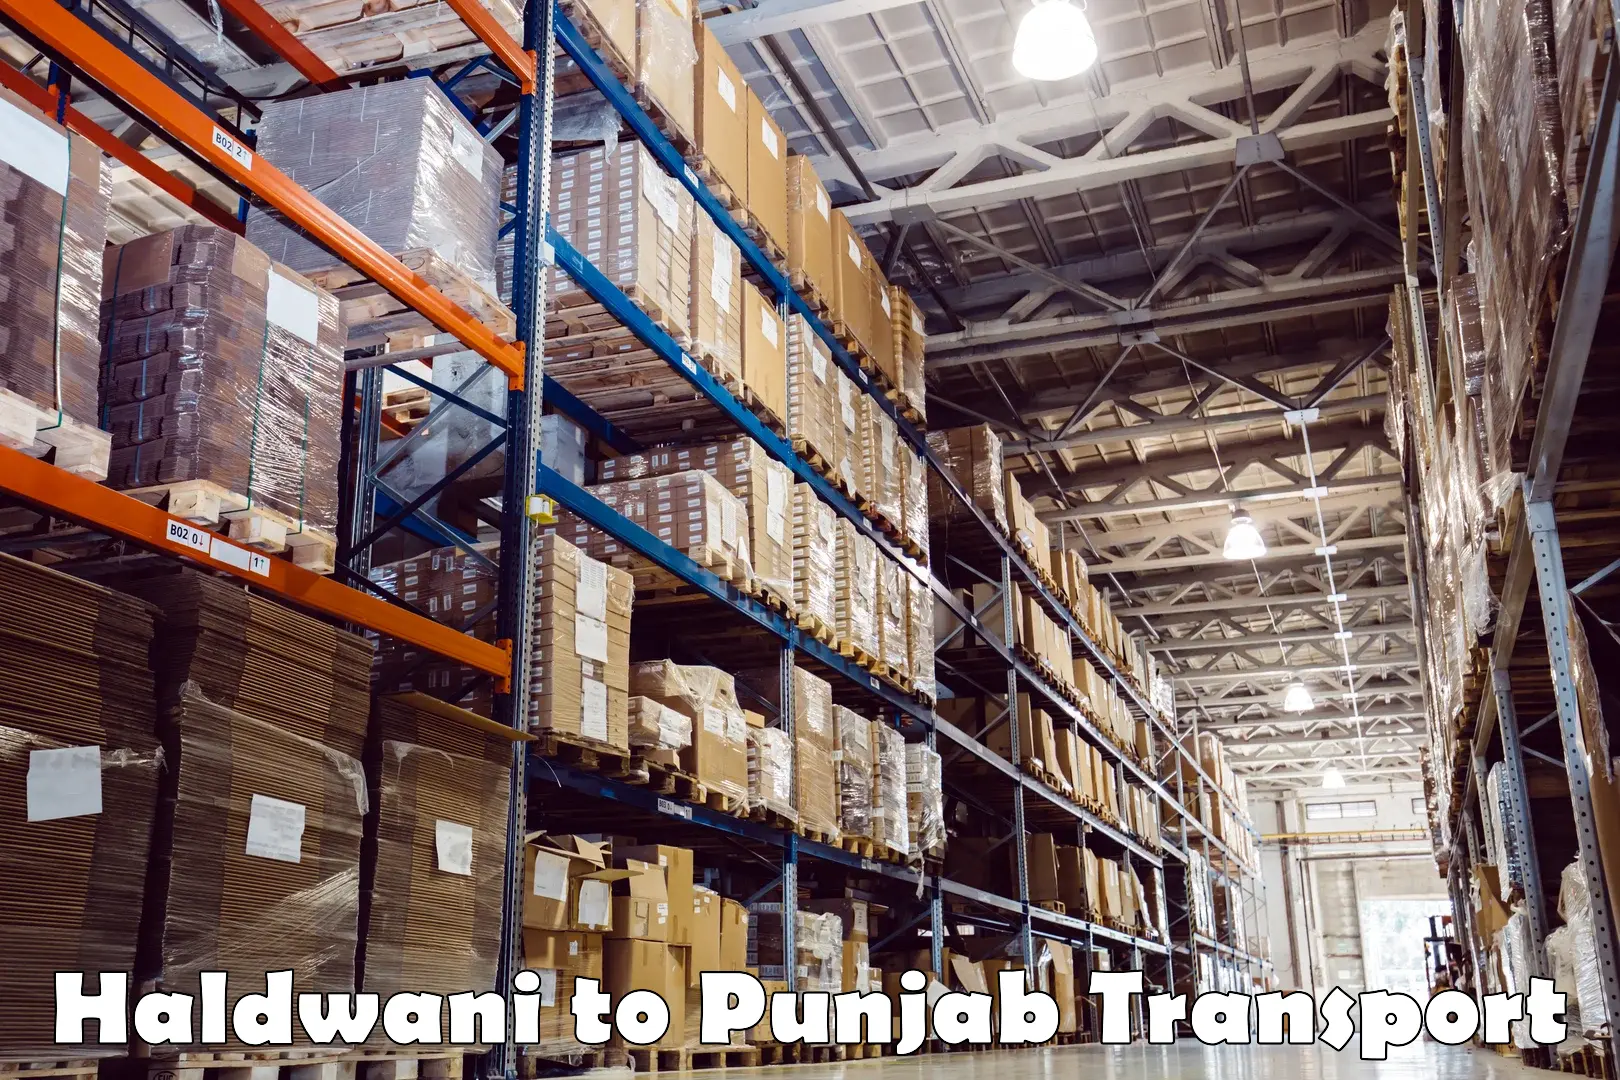 Furniture transport service Haldwani to Punjab